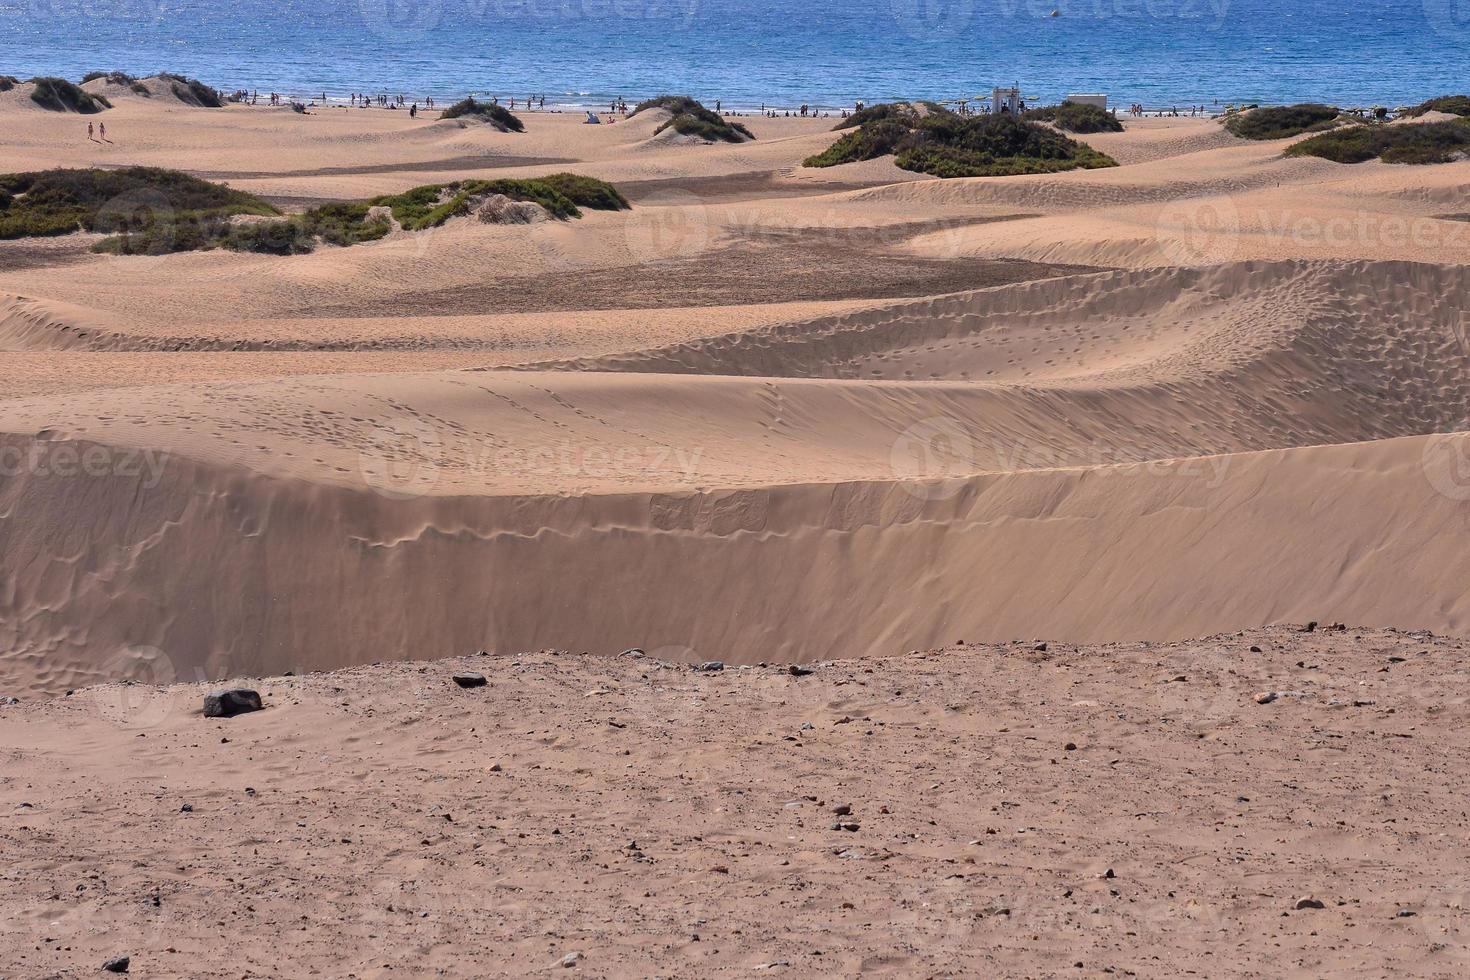 dunas de areia à beira-mar foto